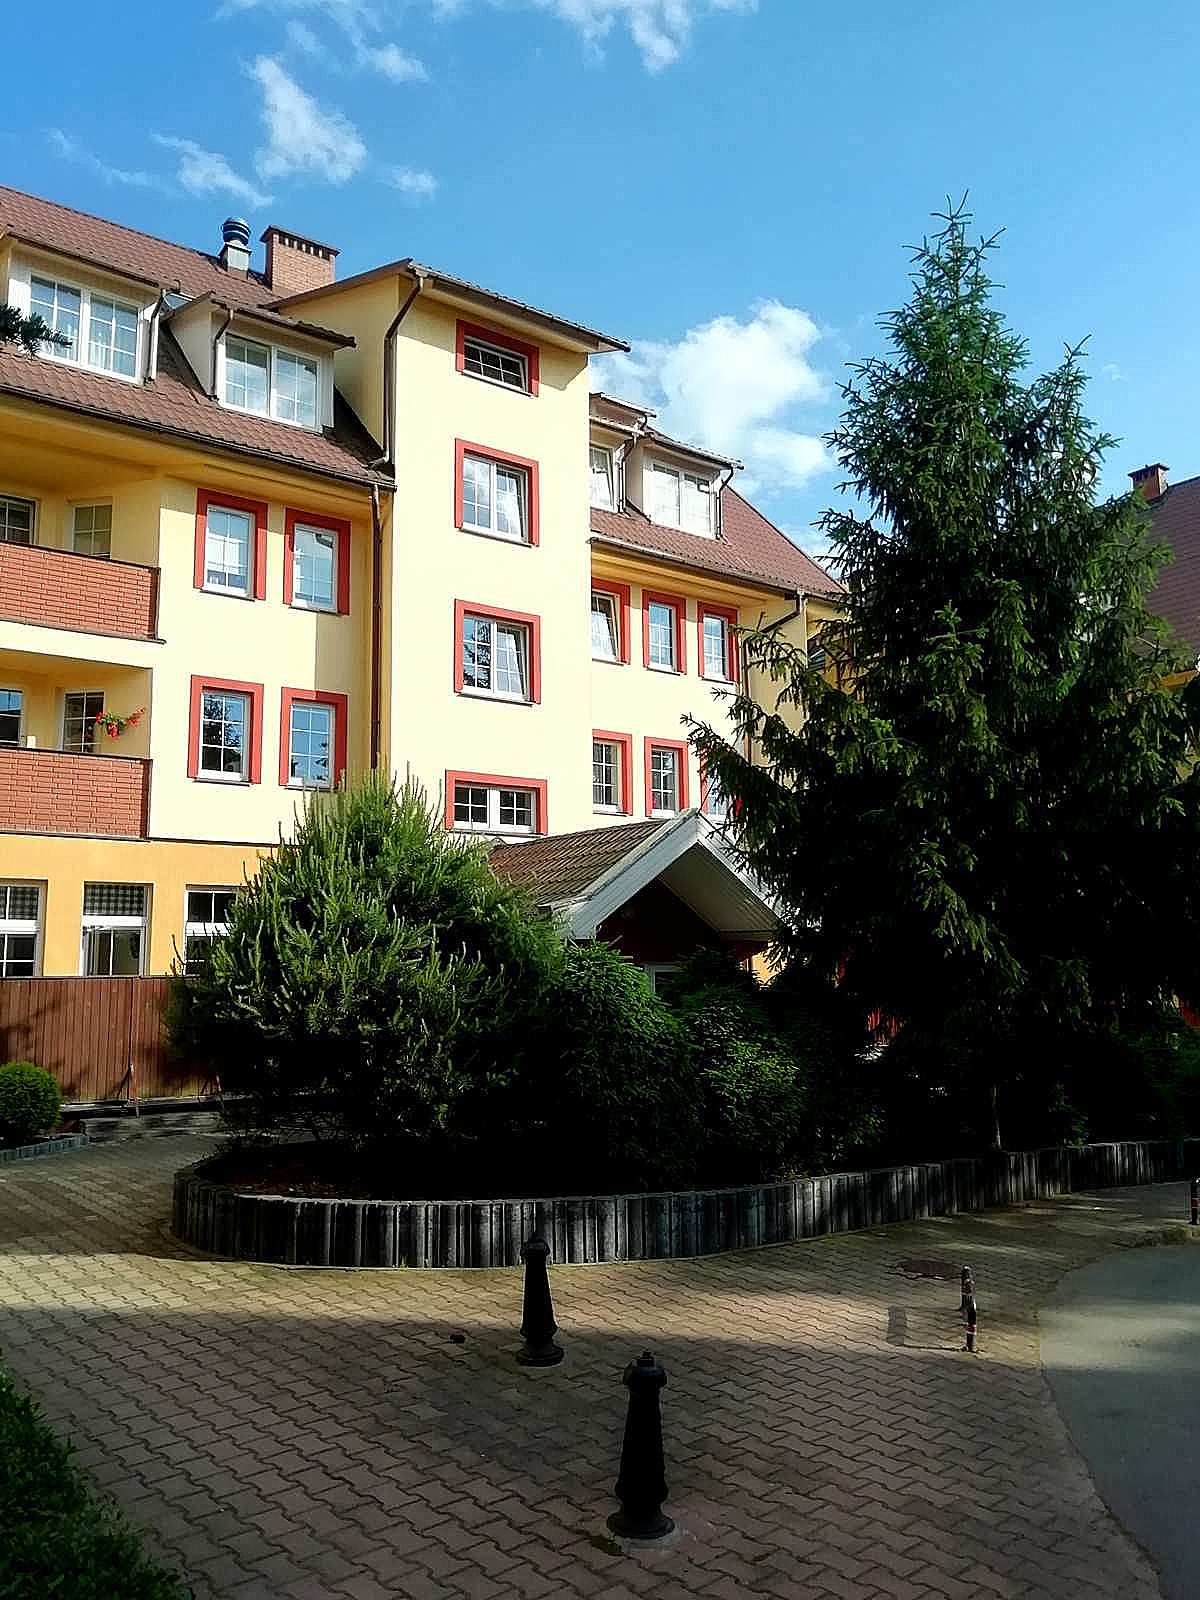 widok z zewnątrz apartamentu fabryka endorfin w kłodzku/entrance of apartment Fabryka Endorfin Klodzko